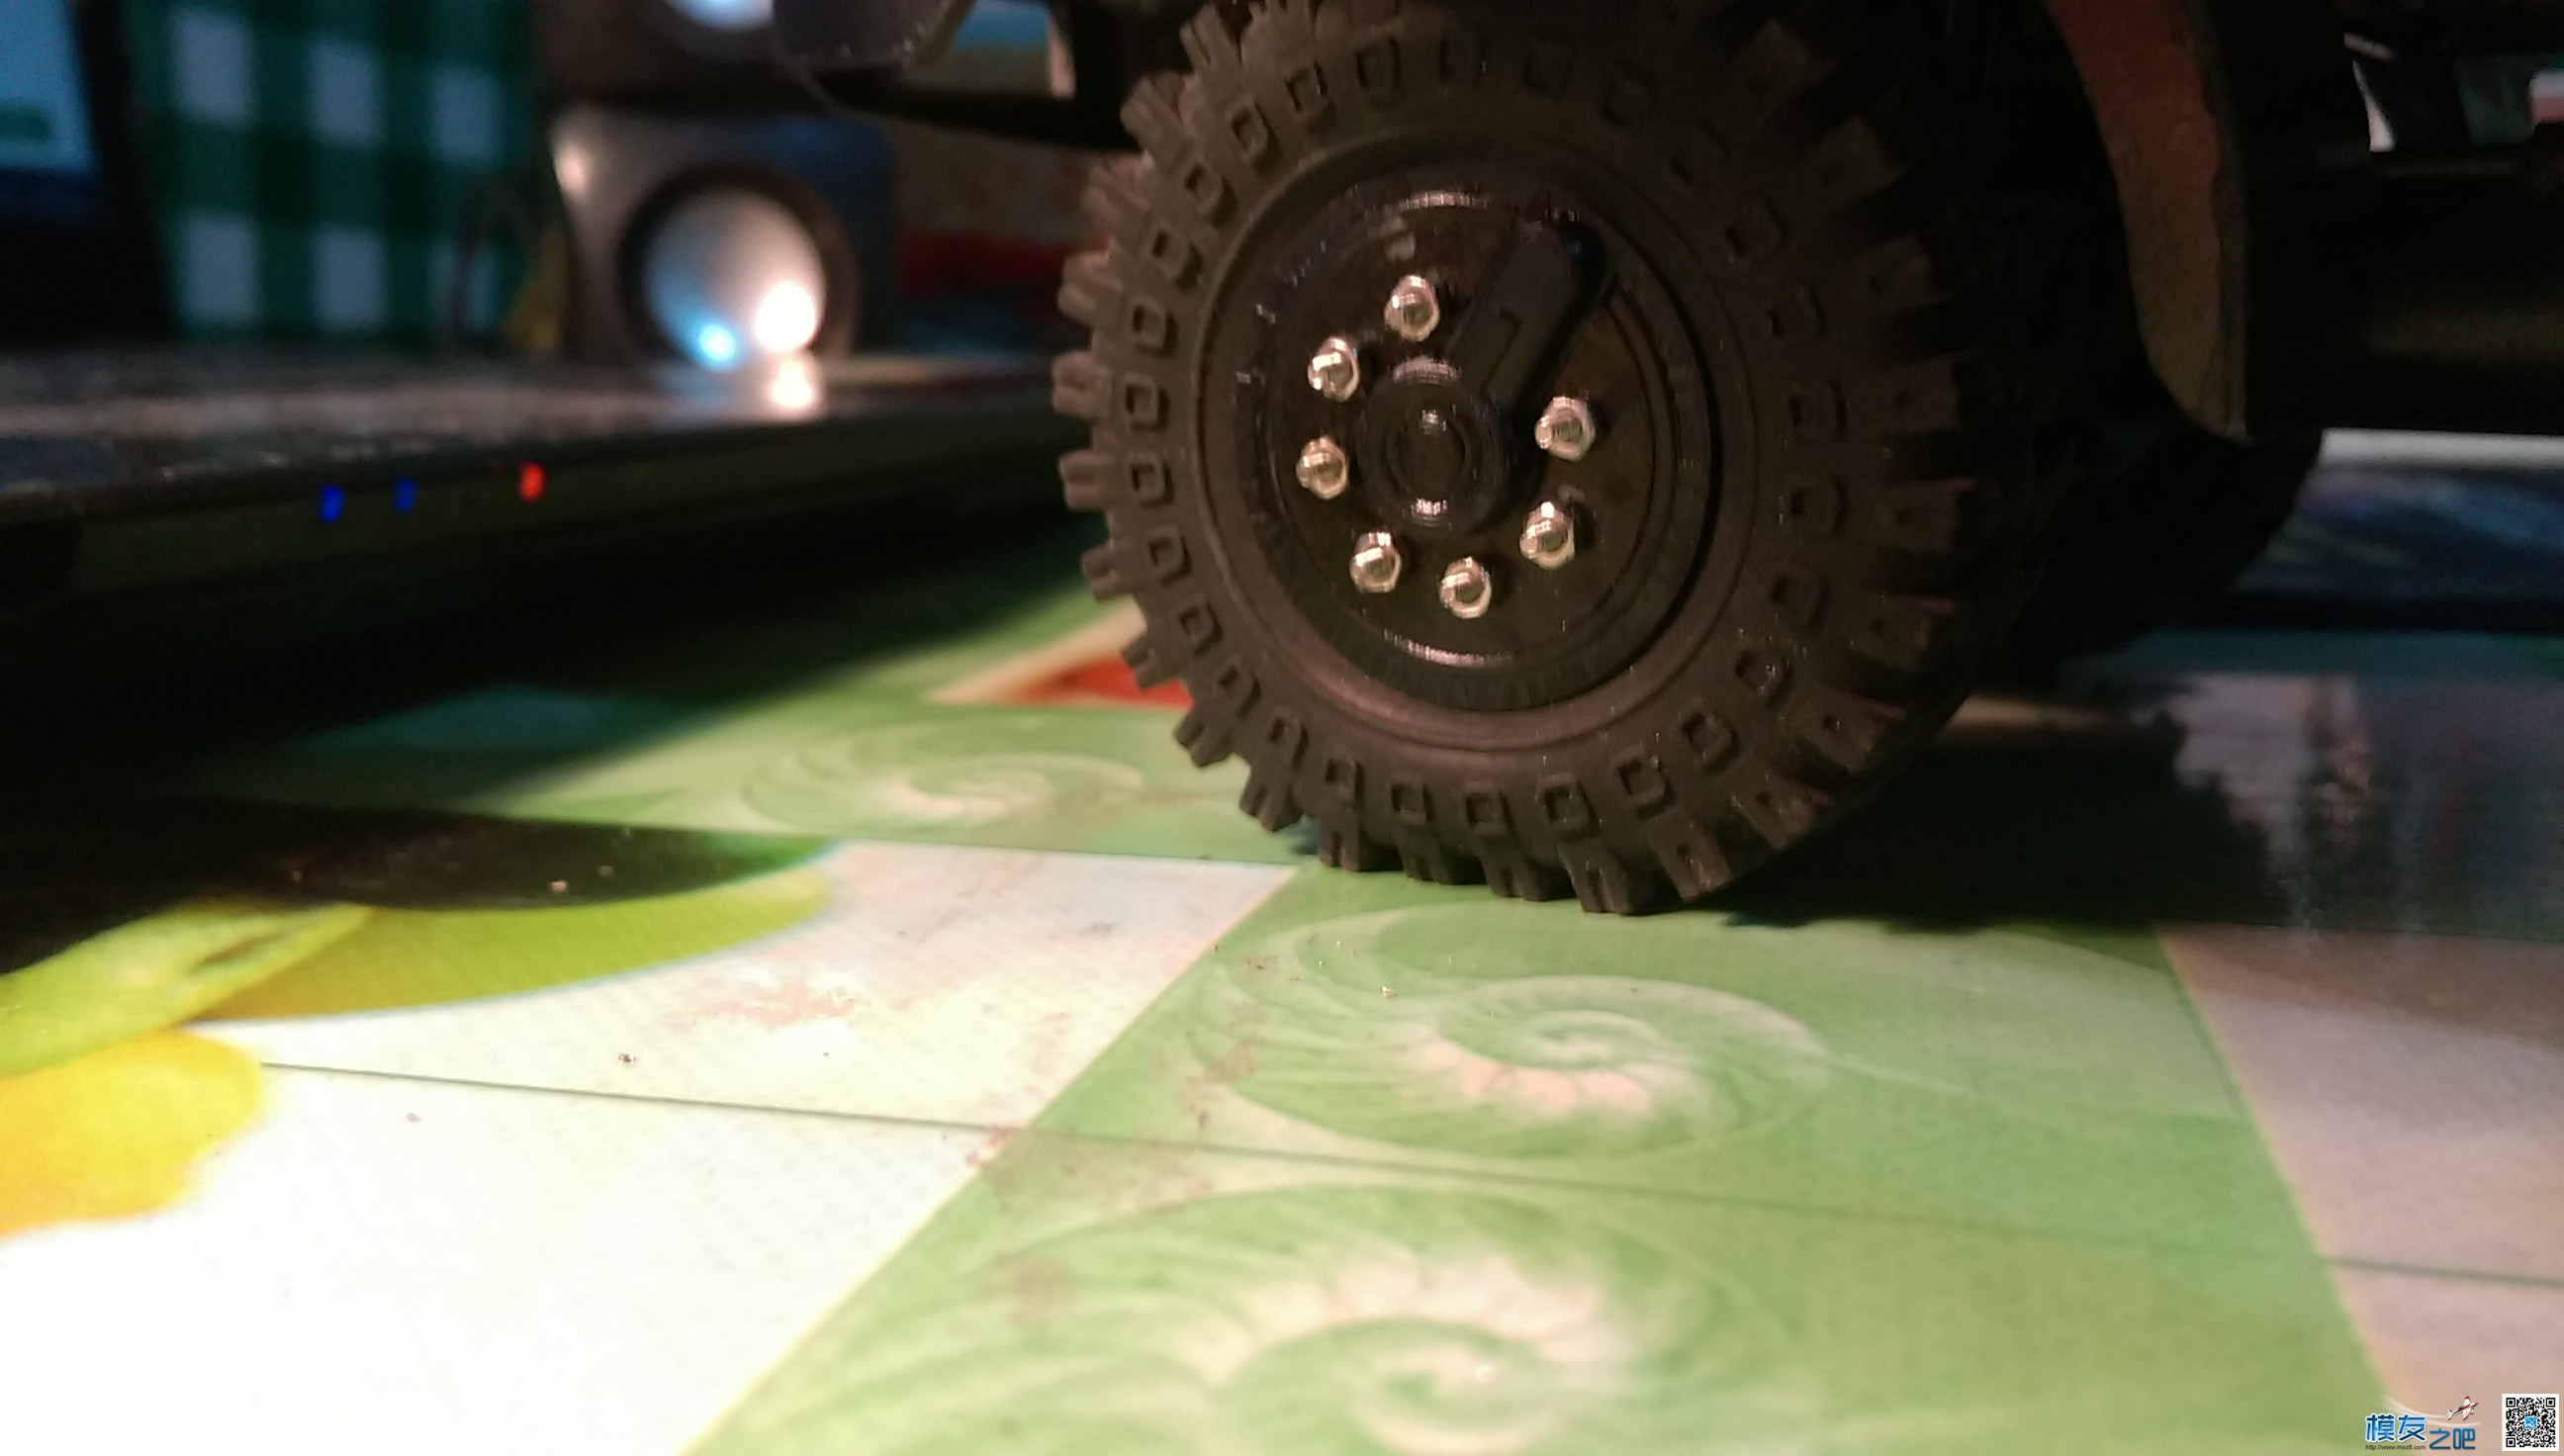 太脱拉第二弹—1:20太脱拉达喀尔沙漠卡车 3D打印,图纸 作者:德克斯特 6146 